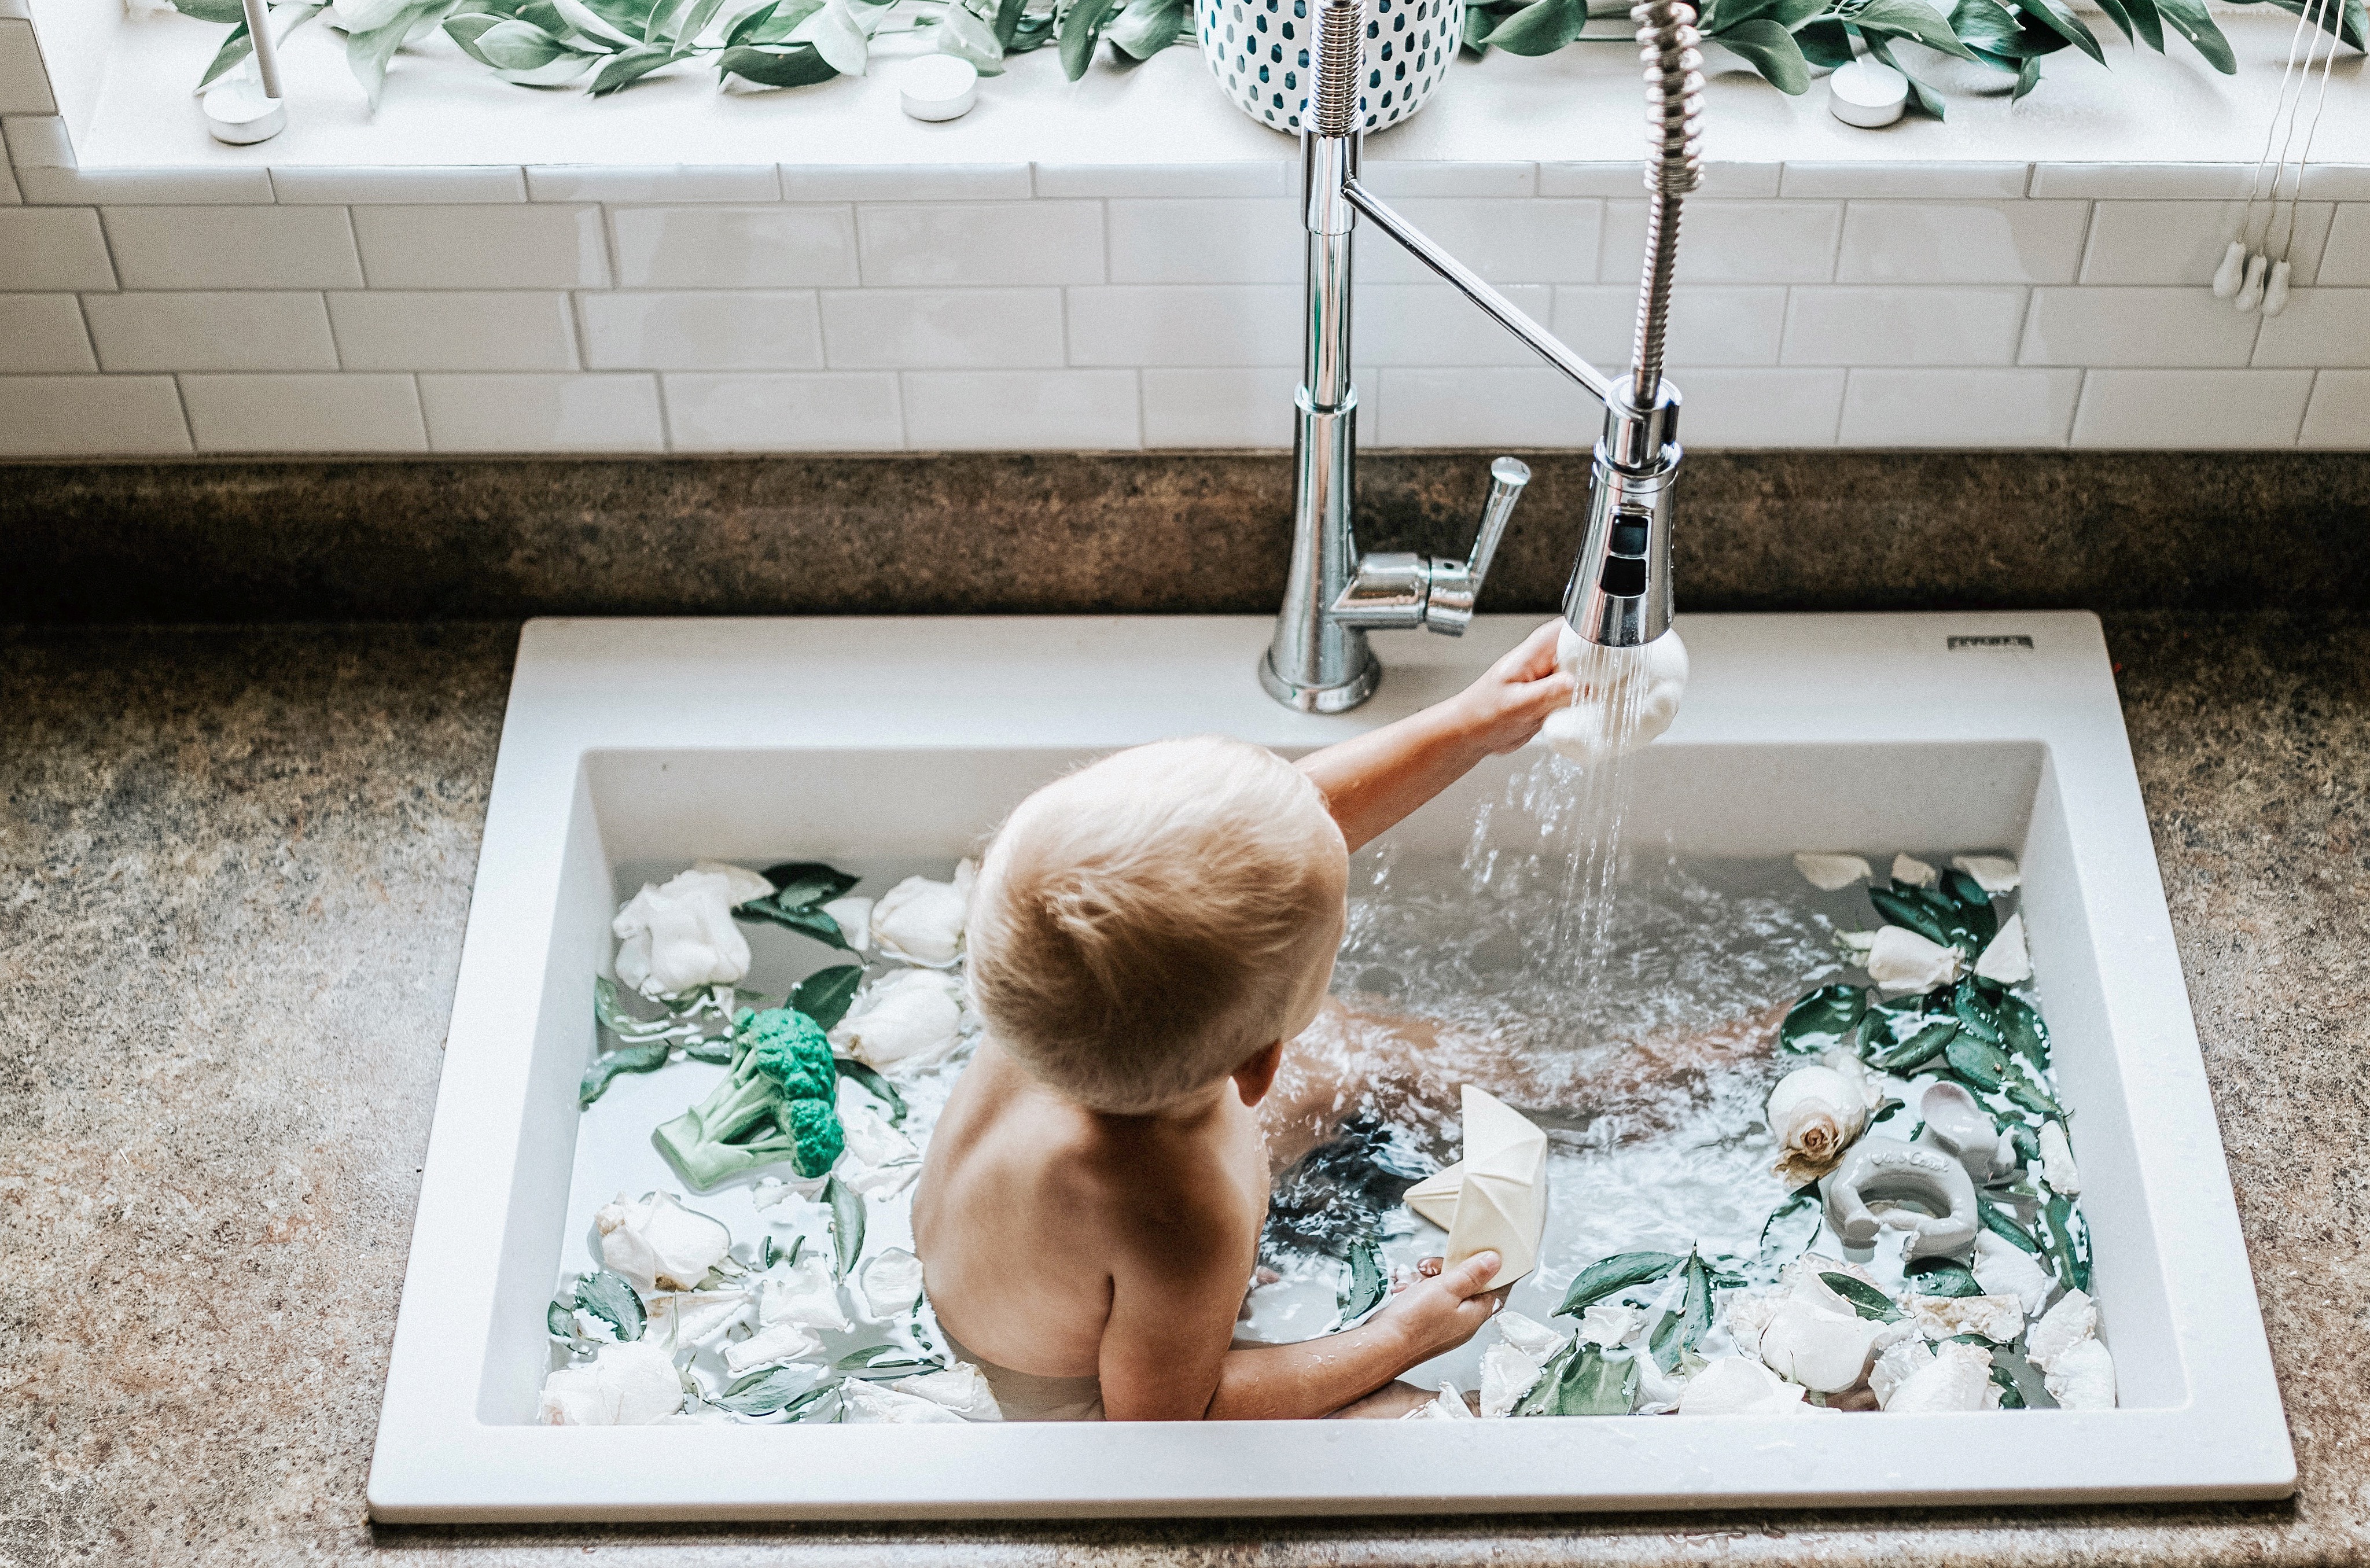 infant bath in kitchen sink